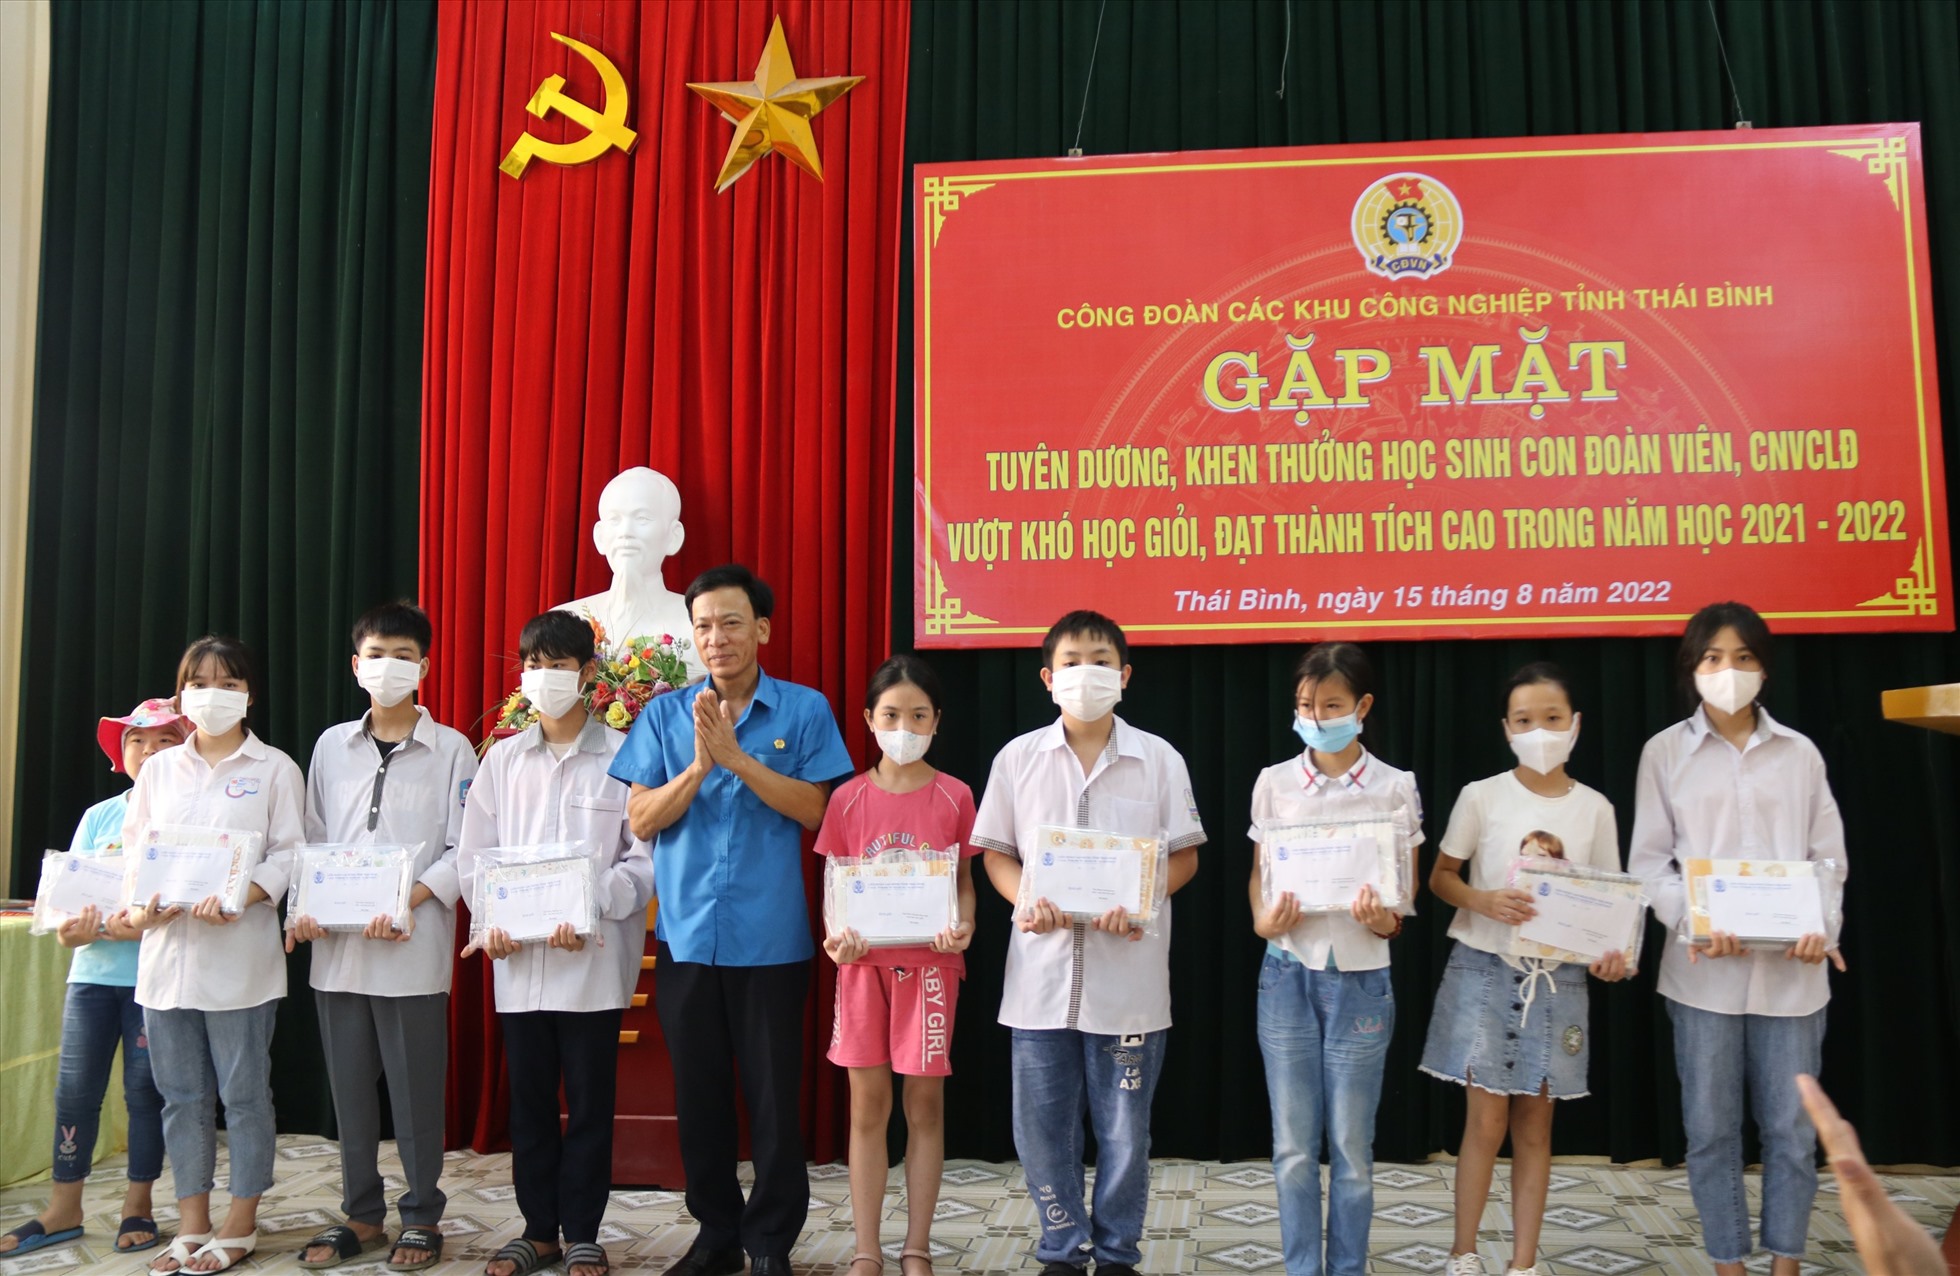 Phó Chủ tịch LĐLĐ tỉnh Thái Bình - Nguyễn Thanh Bình trao quà cho các cháu tại buổi tuyên dương. Ảnh: B.M